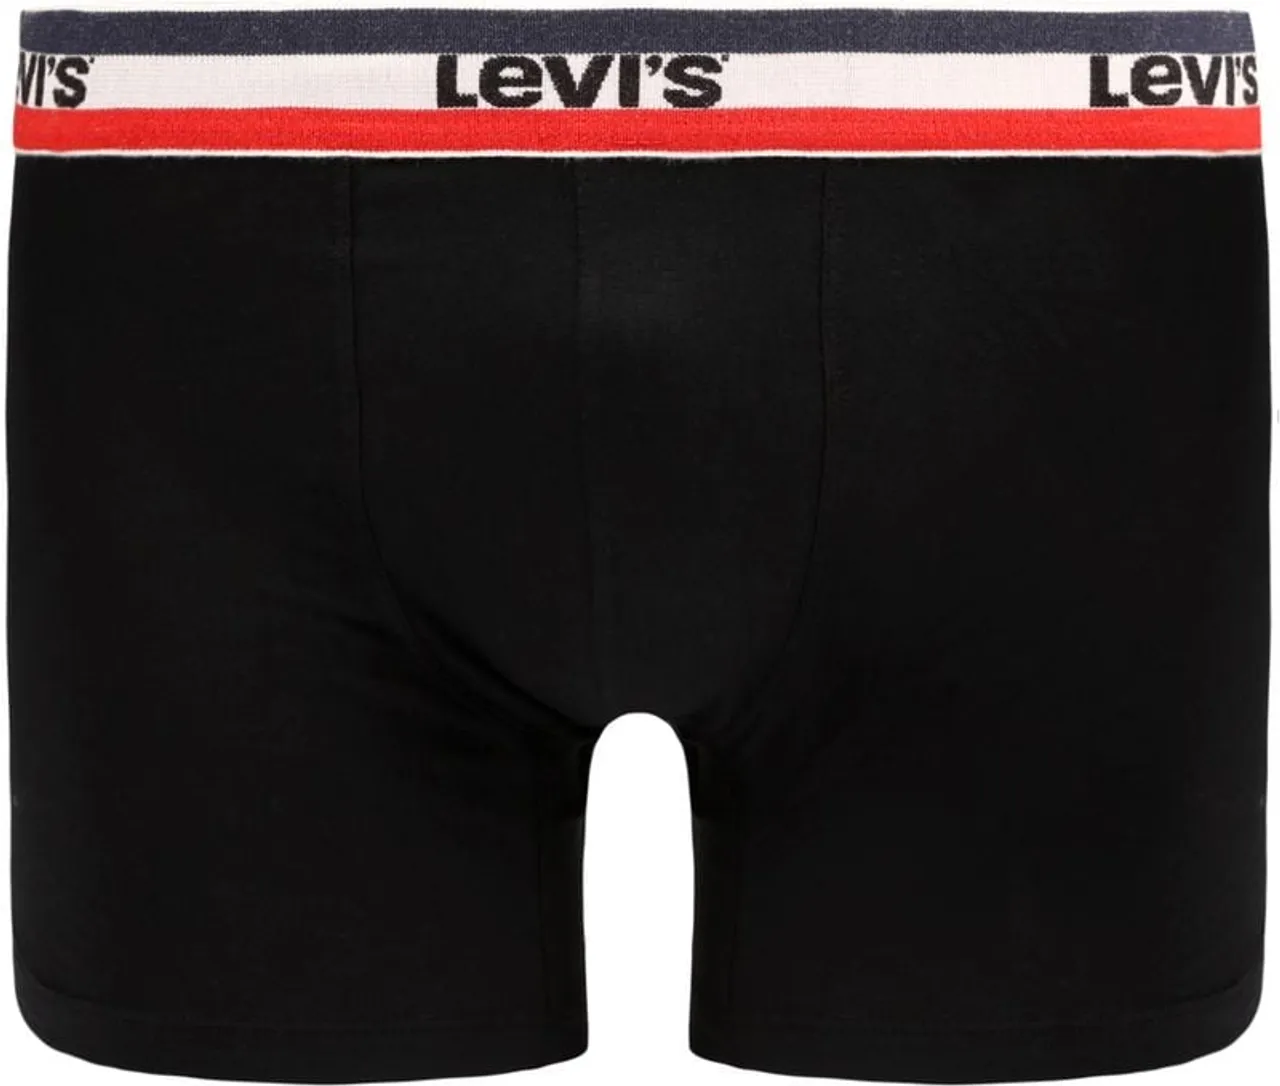 Levi's Brief Boxershorts 2-Pack Zwart